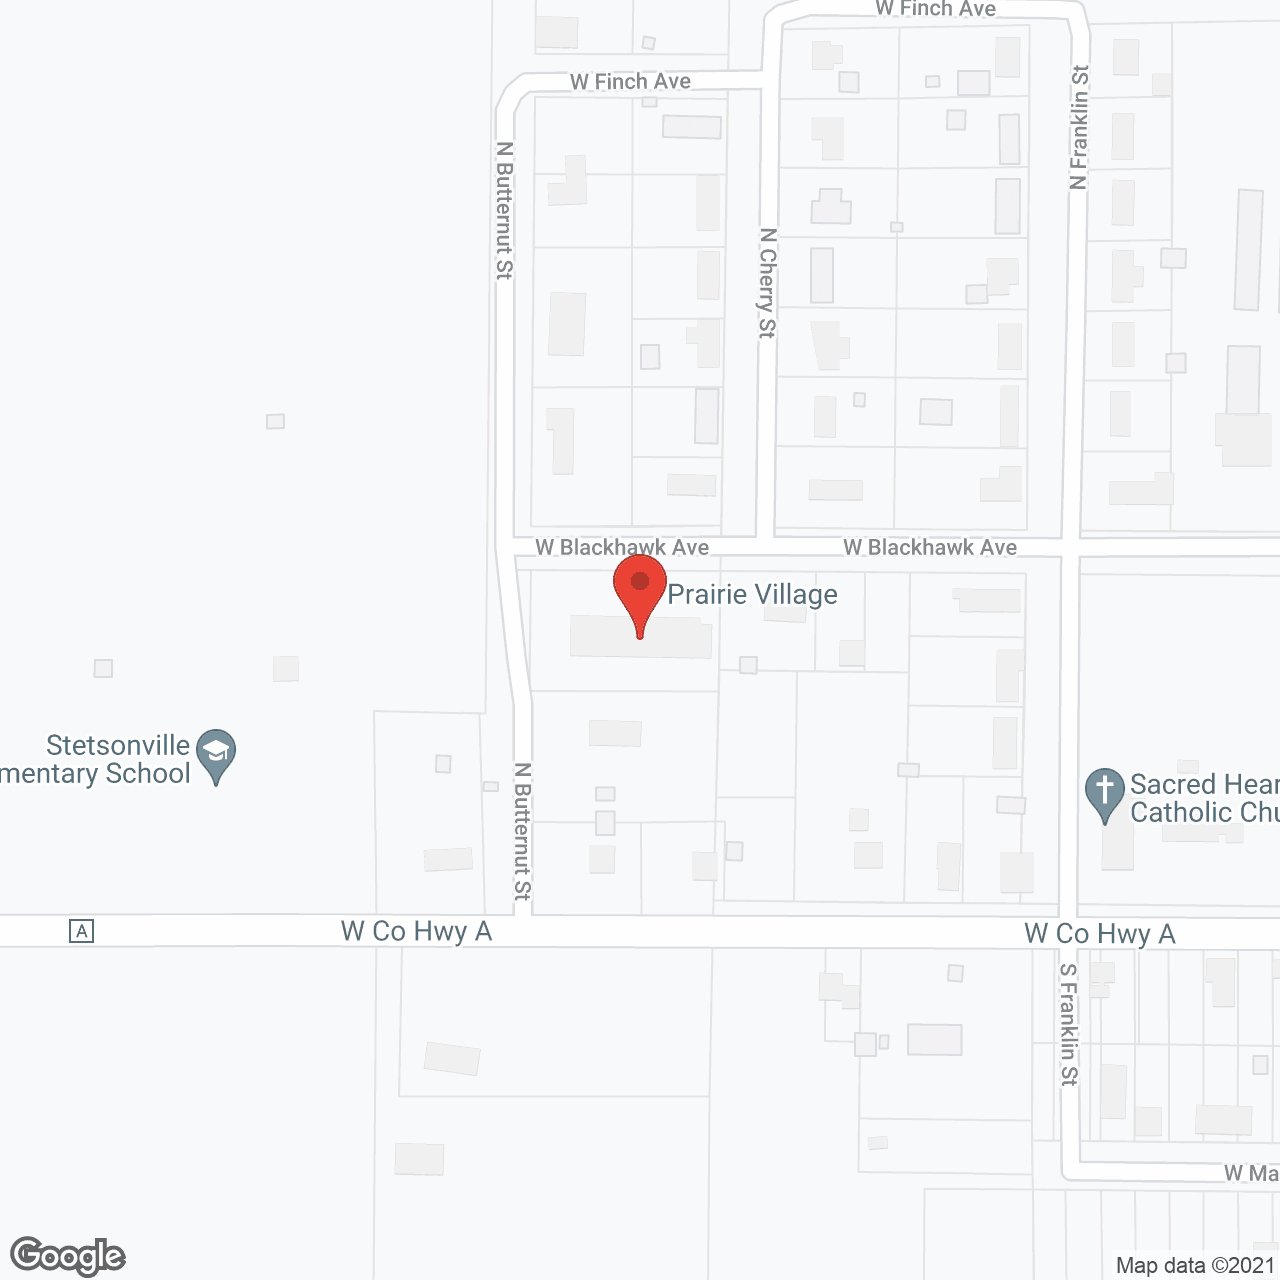 Prairie Village in google map